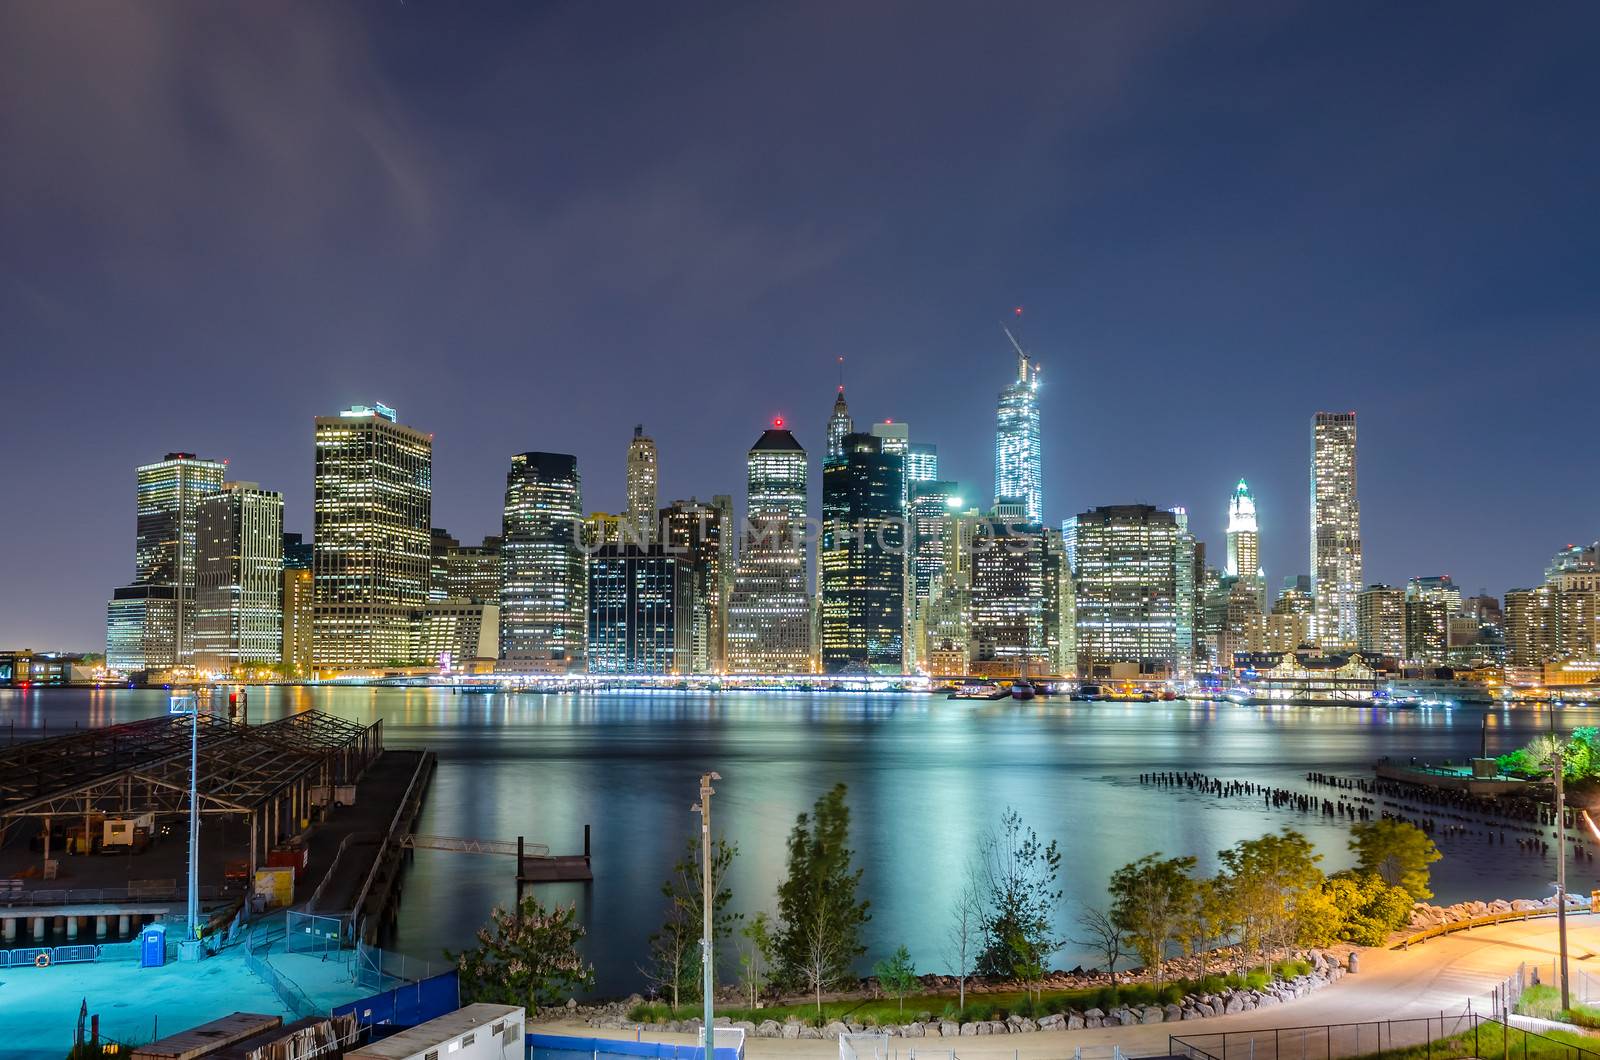 Manhattan Skyline at Night by marcorubino